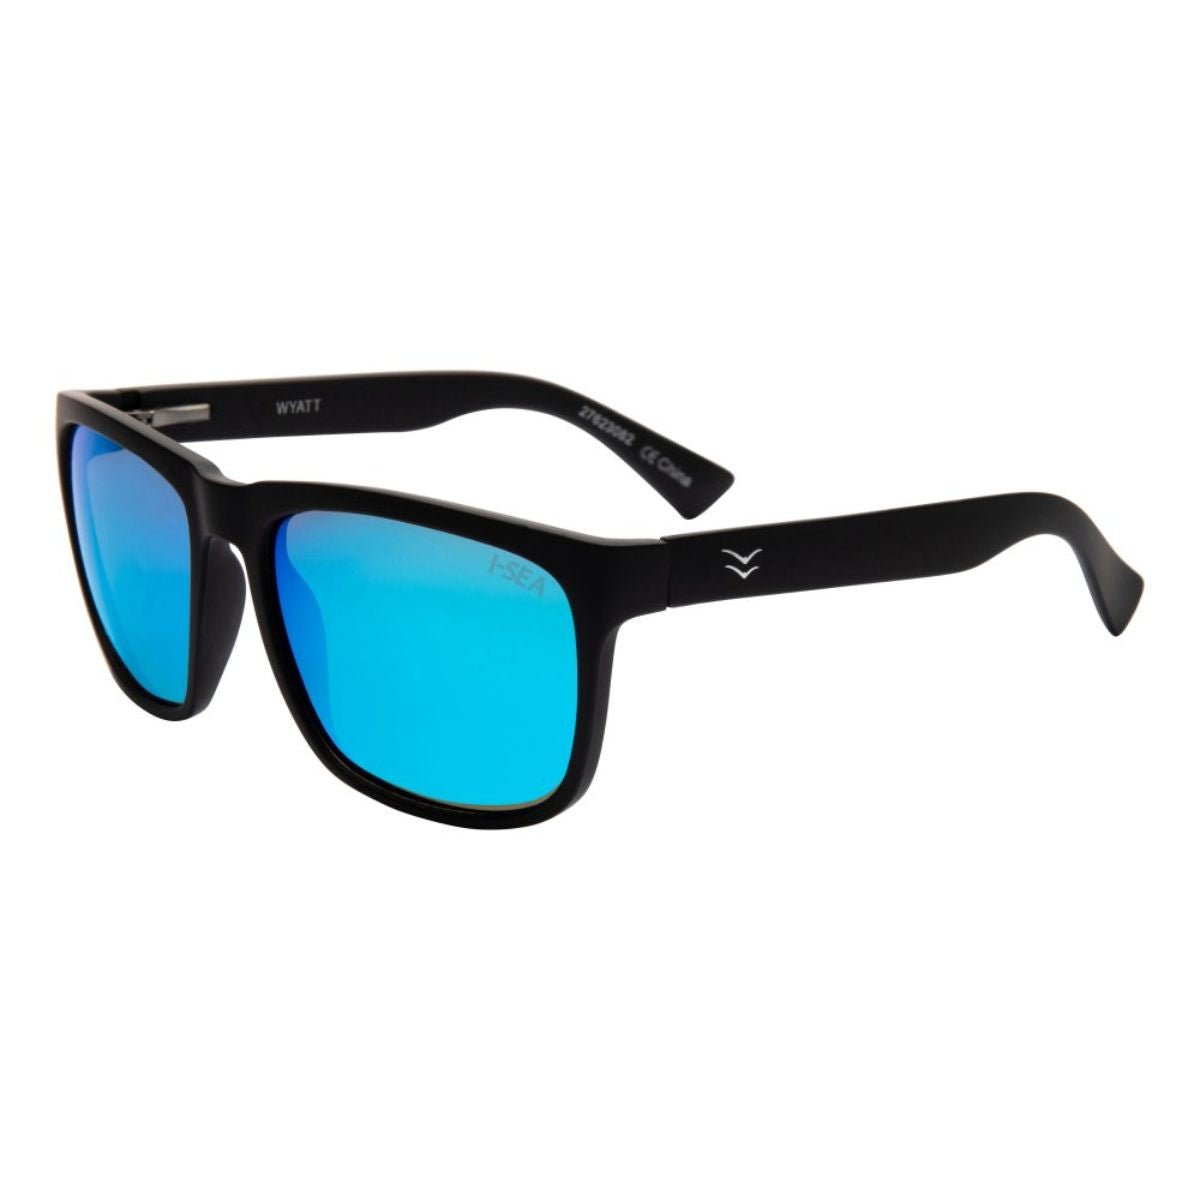 I-Sea Wyatt Sunglasses in Black/Ice Blue - BoardCo